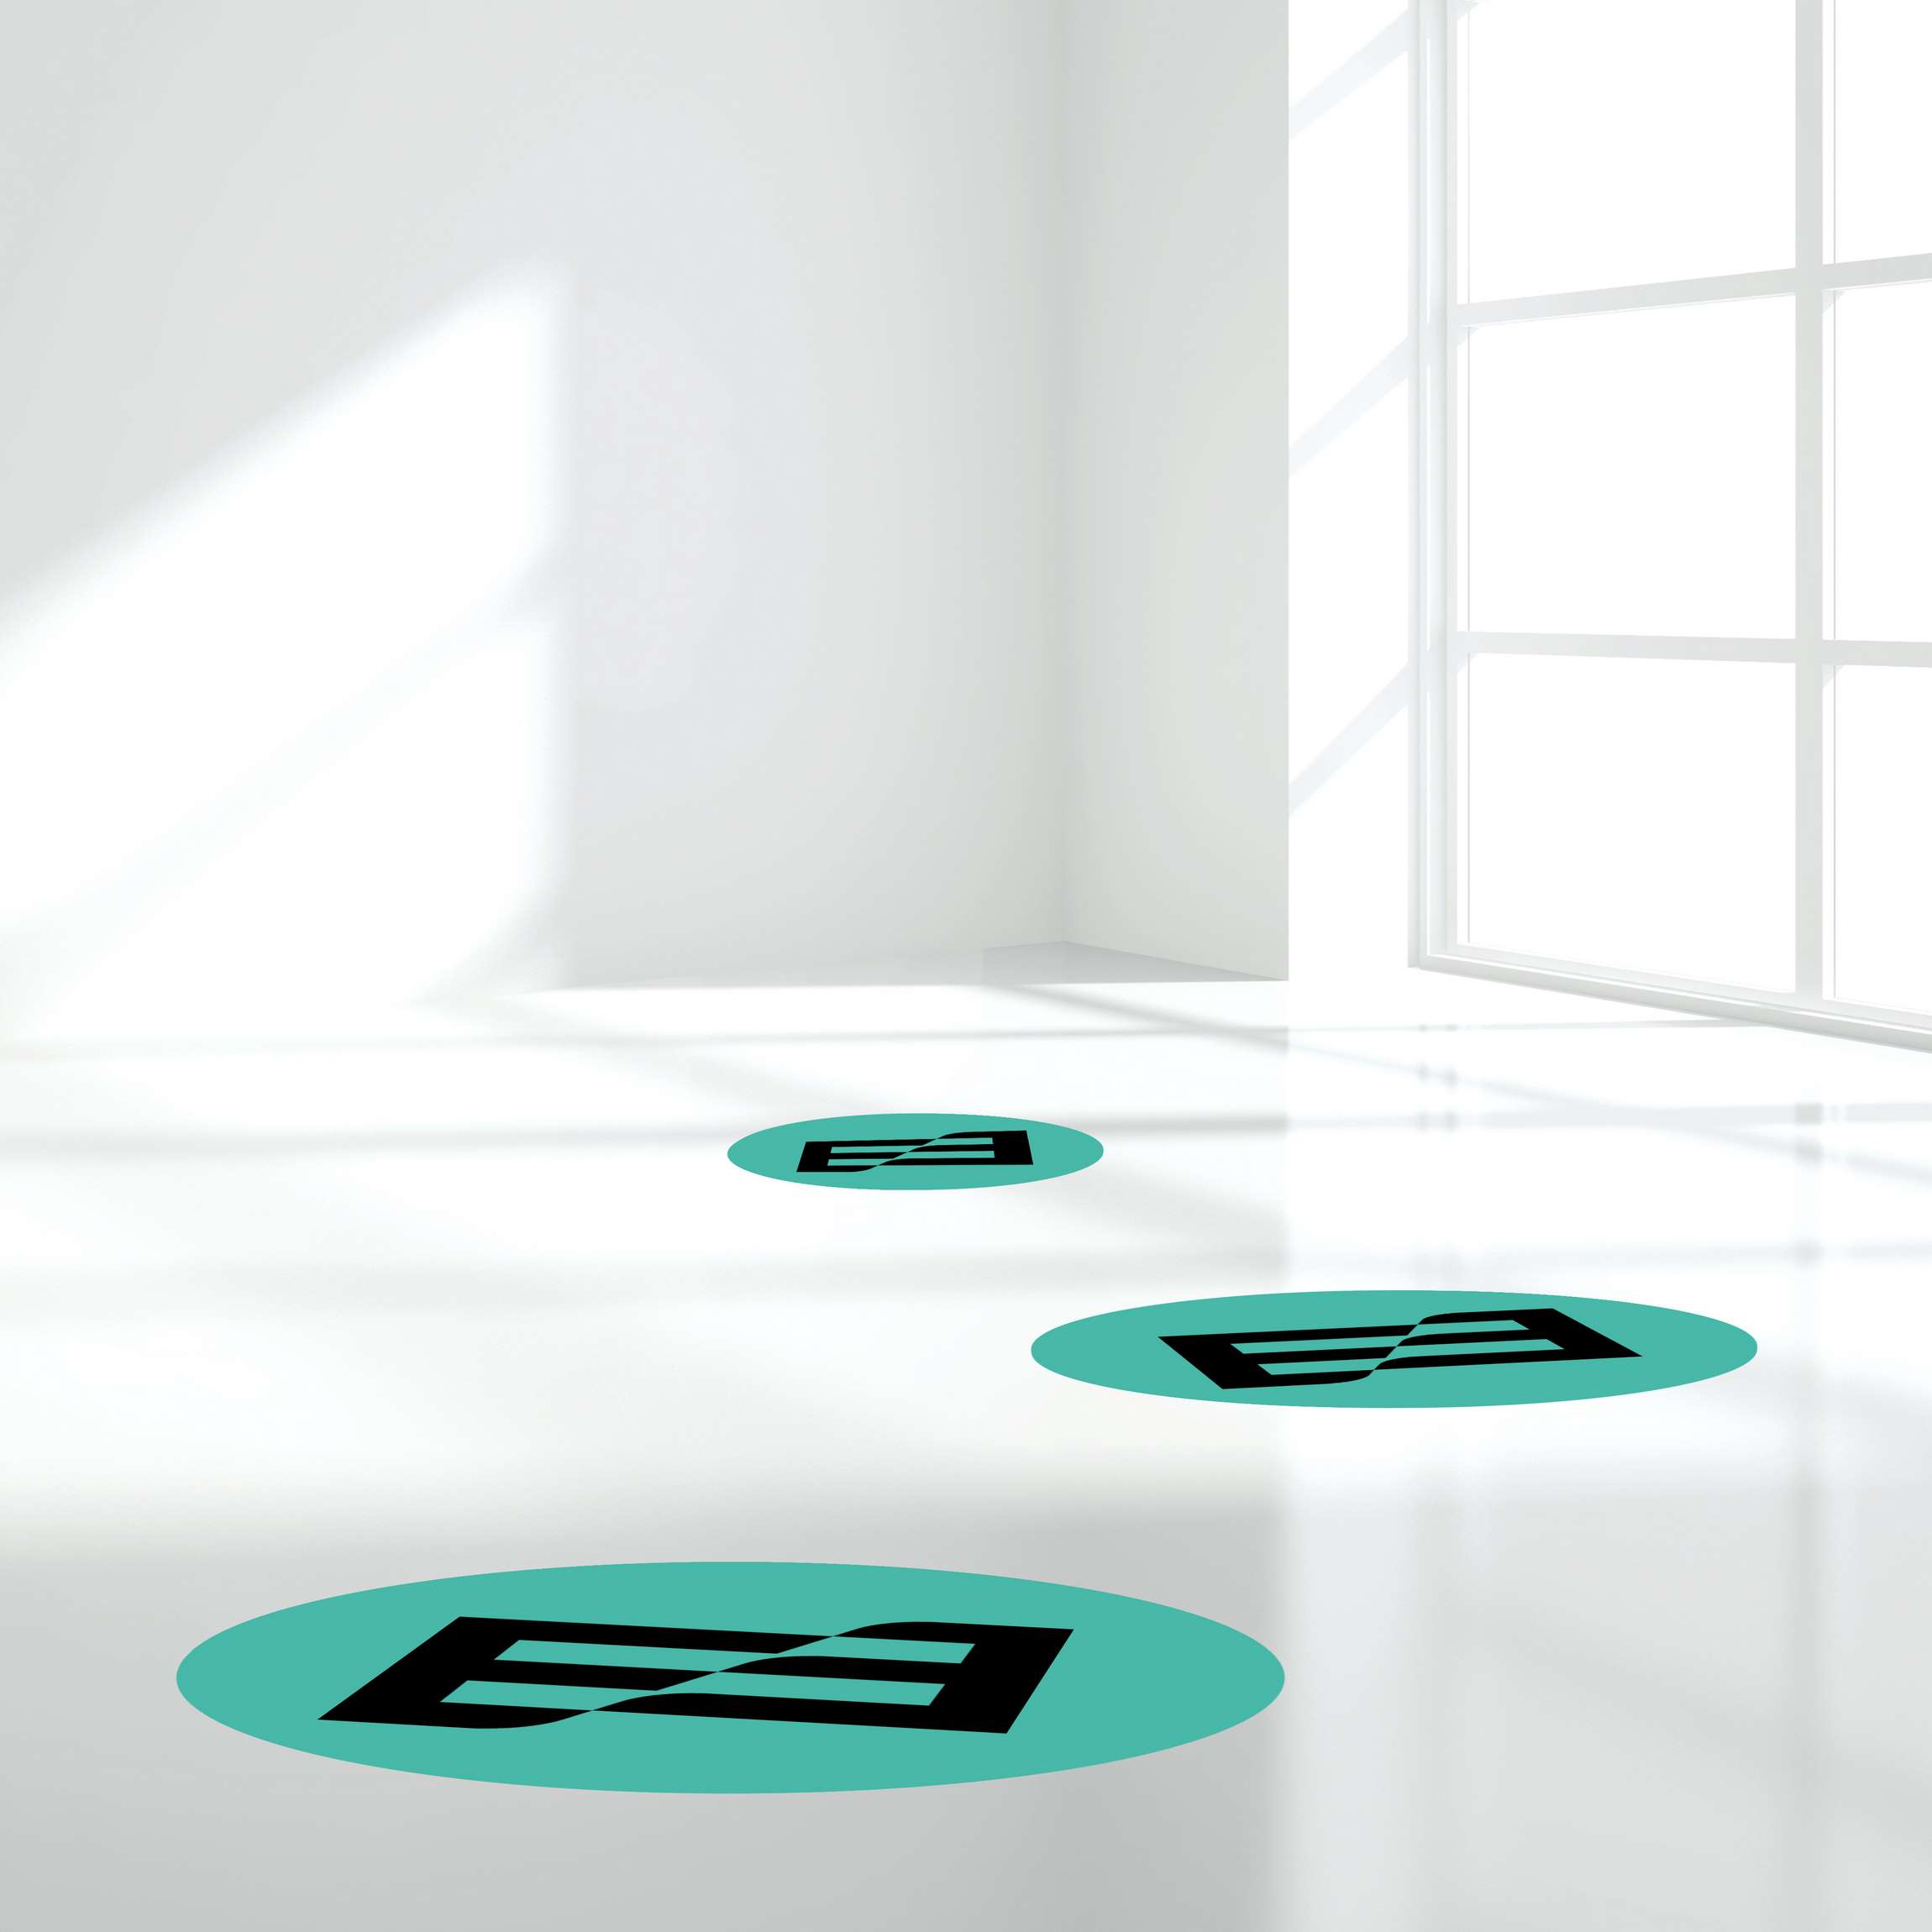 Fußbodenfolie für Bodenaufkleber drucken